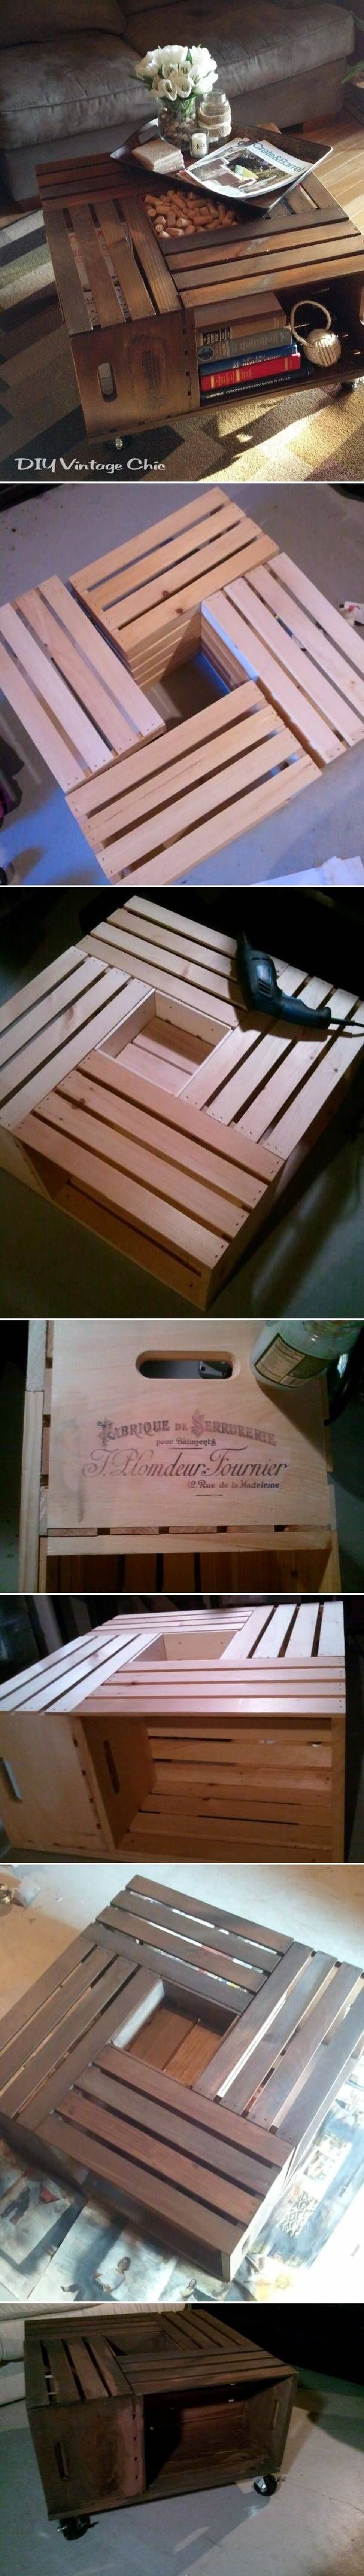 Vintage Wood Crate Coffee Table